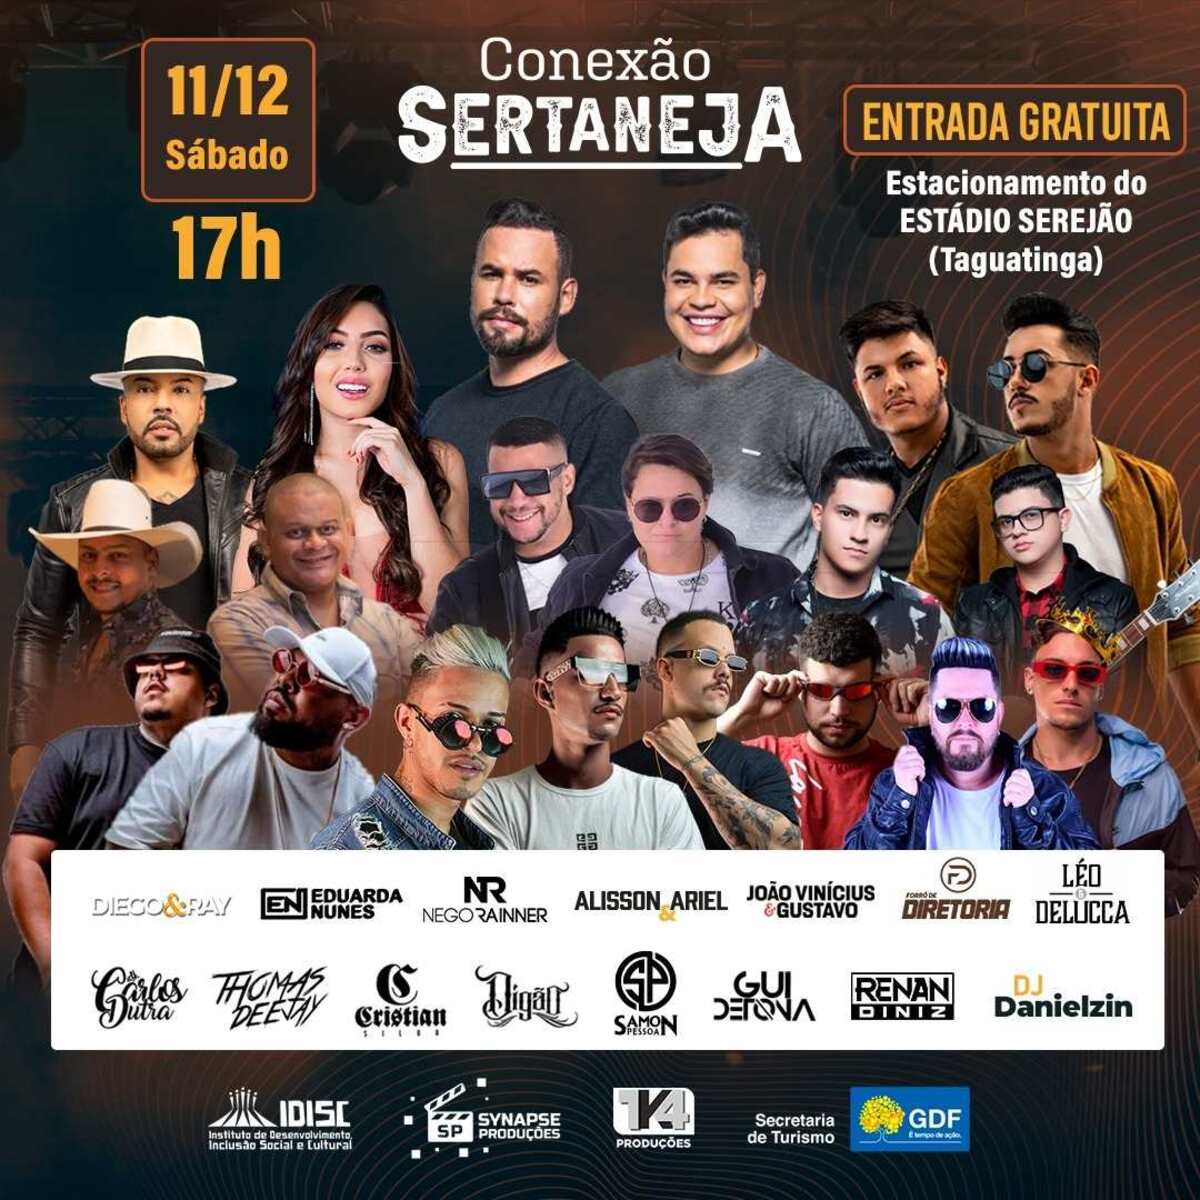 Estádio Serejão é palco para o festival "Conexão Sertaneja" neste sábado 11/12